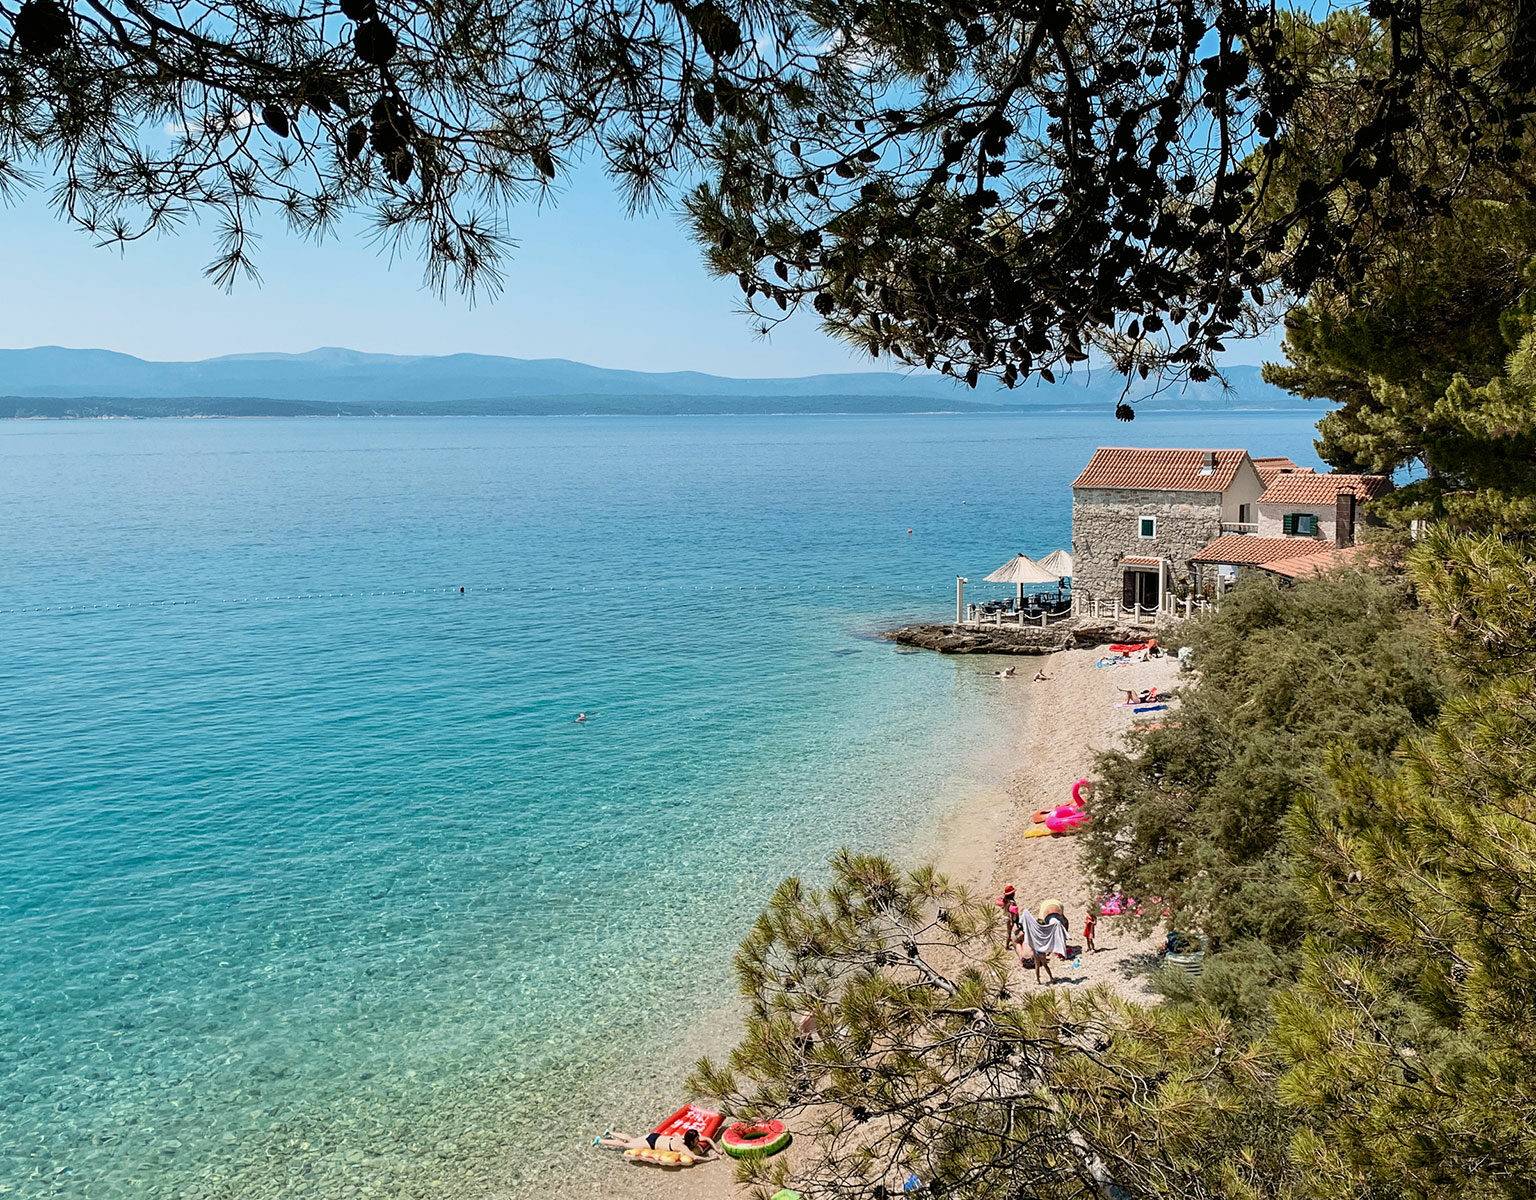 Durch ein paar Baumzweige hindurch fällt der Blick auf eine Bucht mit Kiesstrand und glasklarem, türkisfarbenem Wasser in Kroatien.